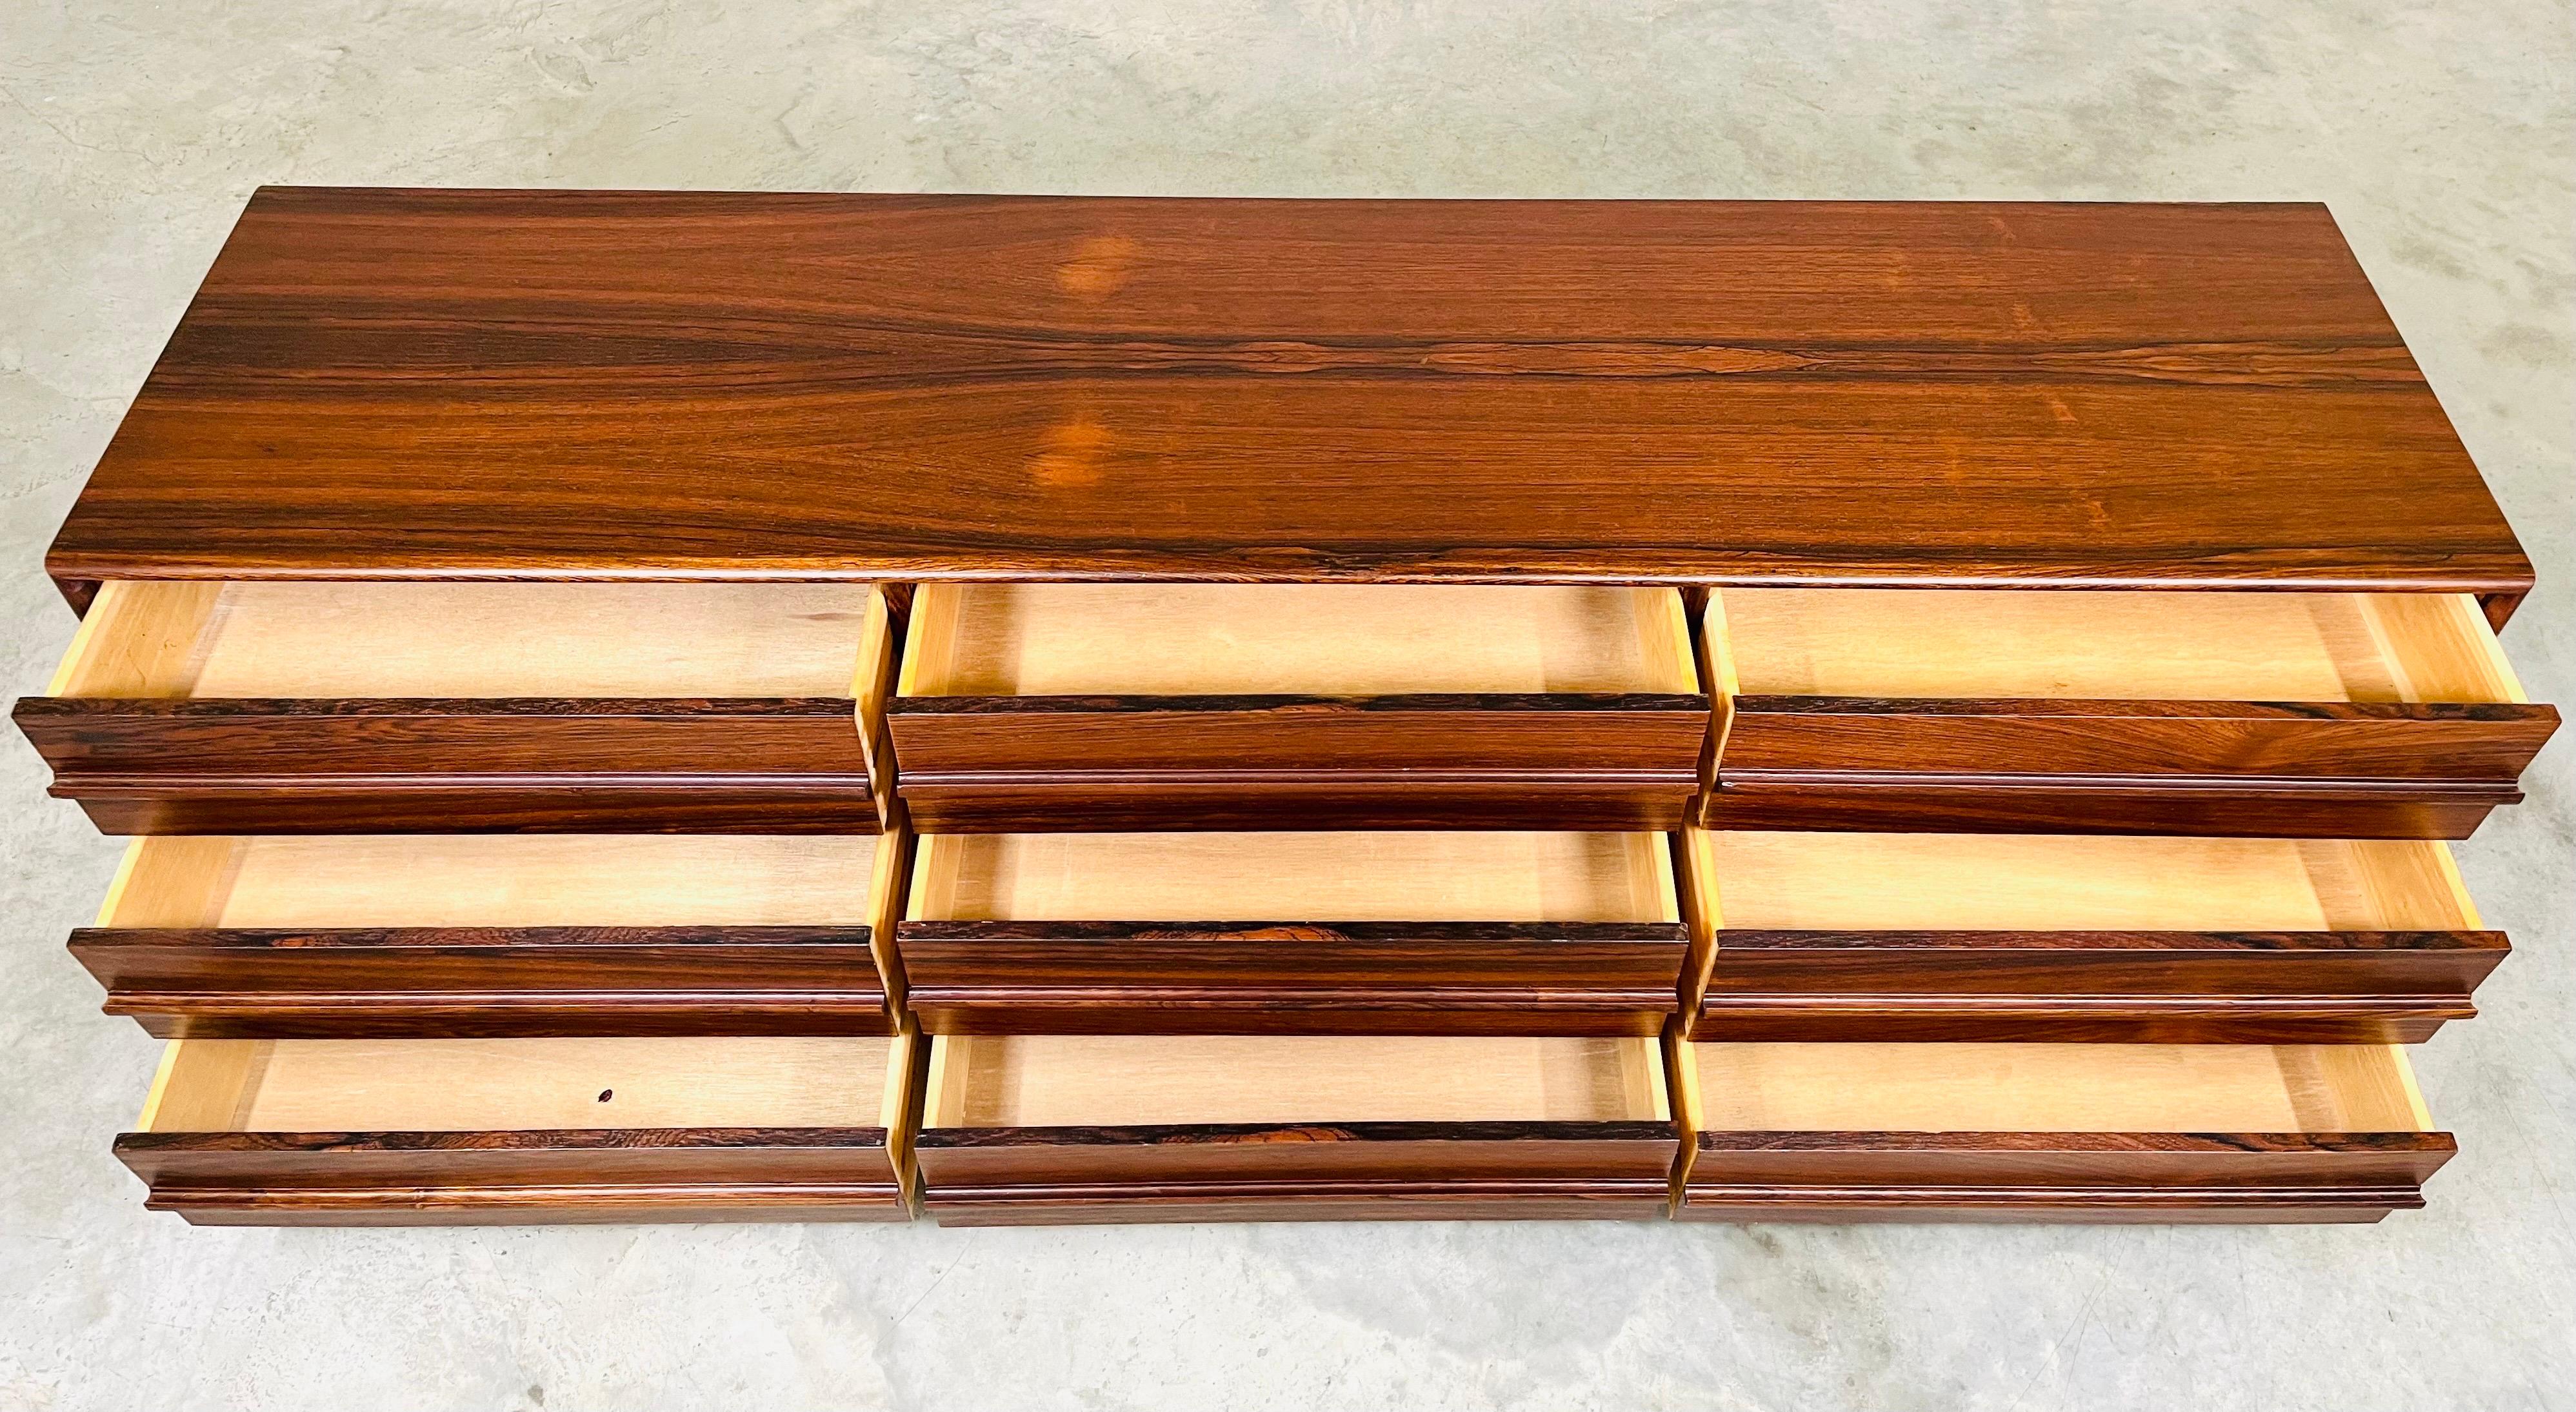 Une superbe commode triple à 9 tiroirs en bois de rose brésilien à la manière d'Arne Vodder par Inter-Continental-Design Limited du Canada vers 1970. 
Le grain est magnifique. Toutes les façades de tiroirs sont assorties, avec des poignées